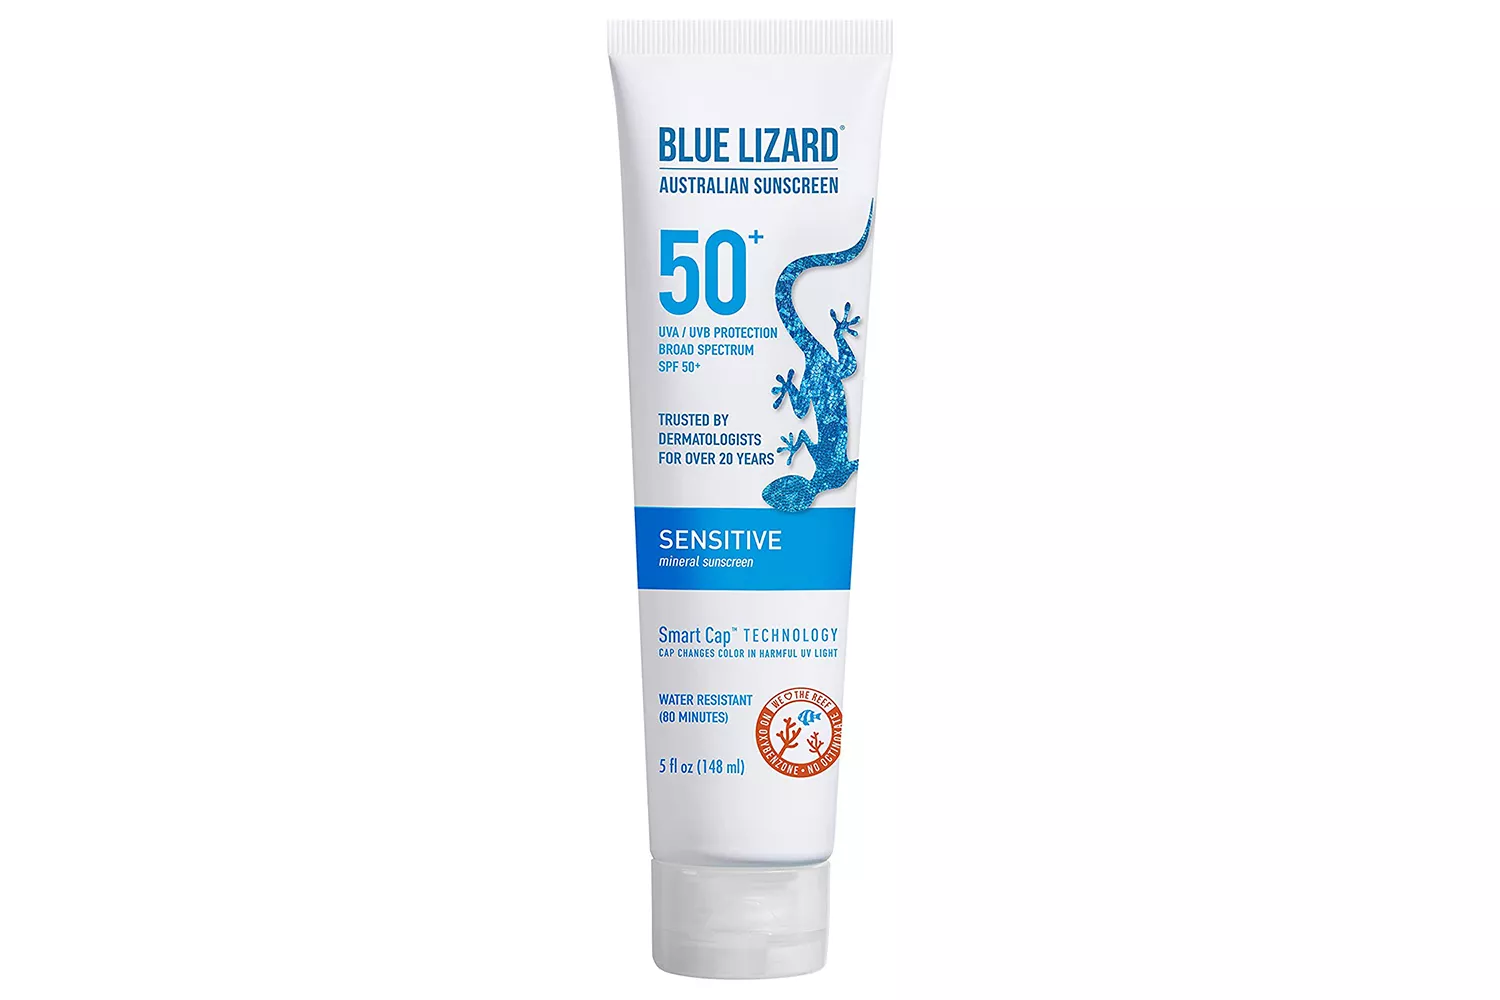 BLUE LIZARD Sensitive Mineral Sunscreen with Zinc Oxide 50+